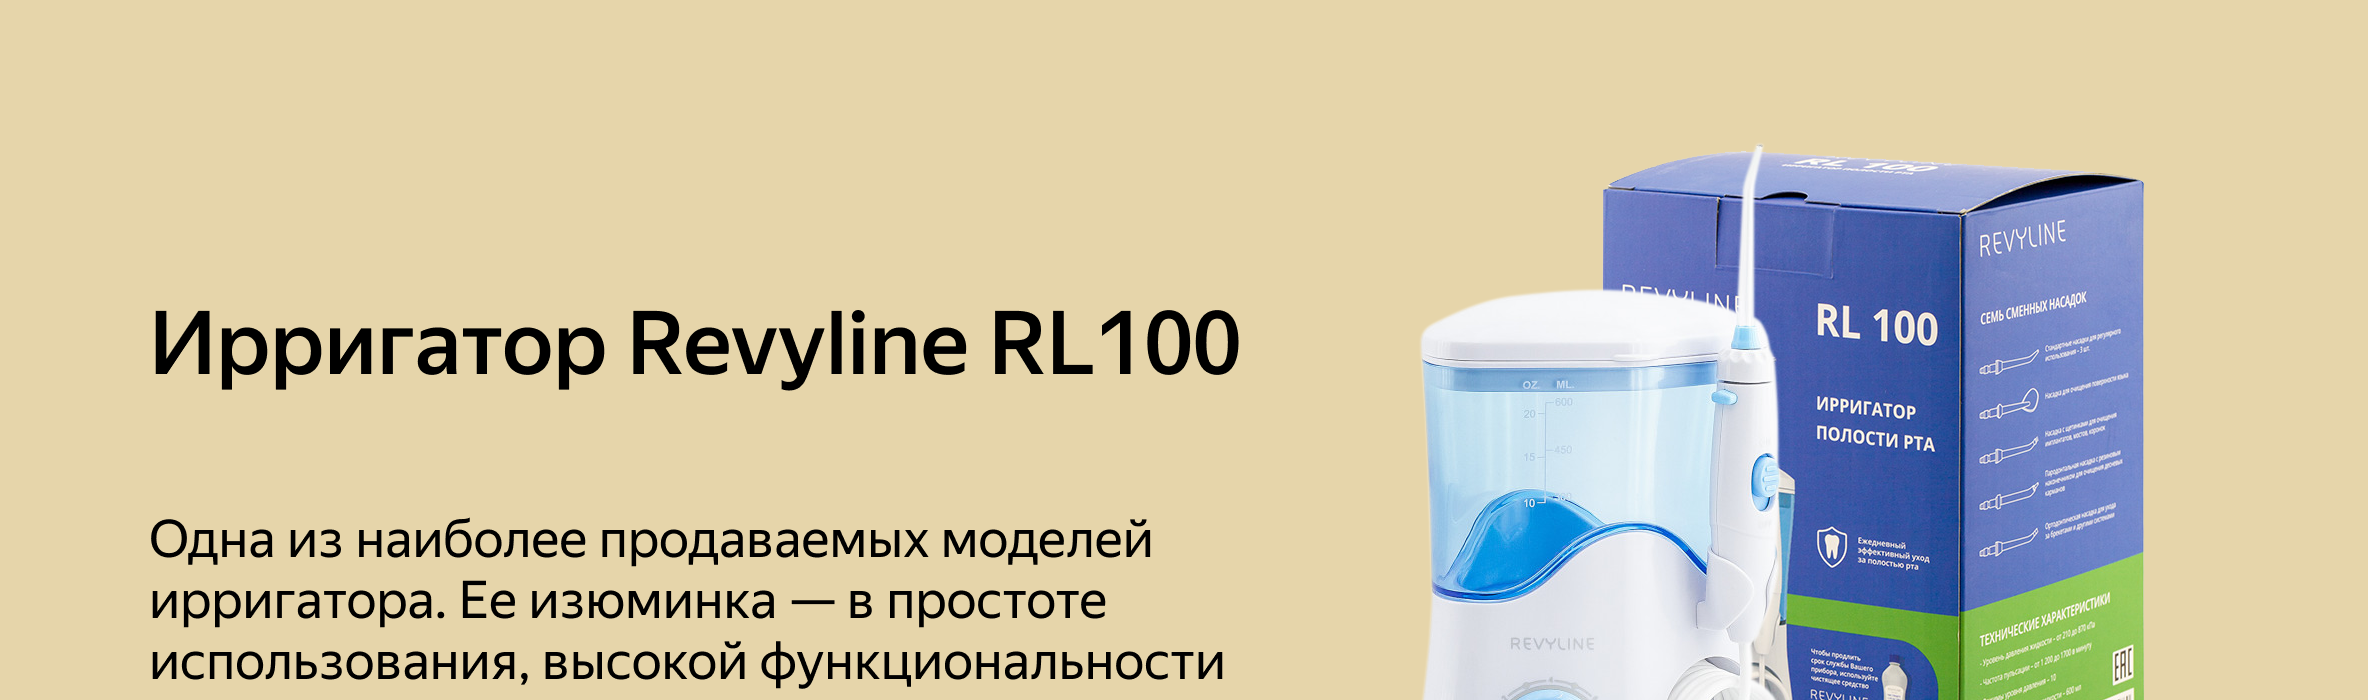 Ирригатор revyline rl 100 белый white light система отбеливания зубов отзывы